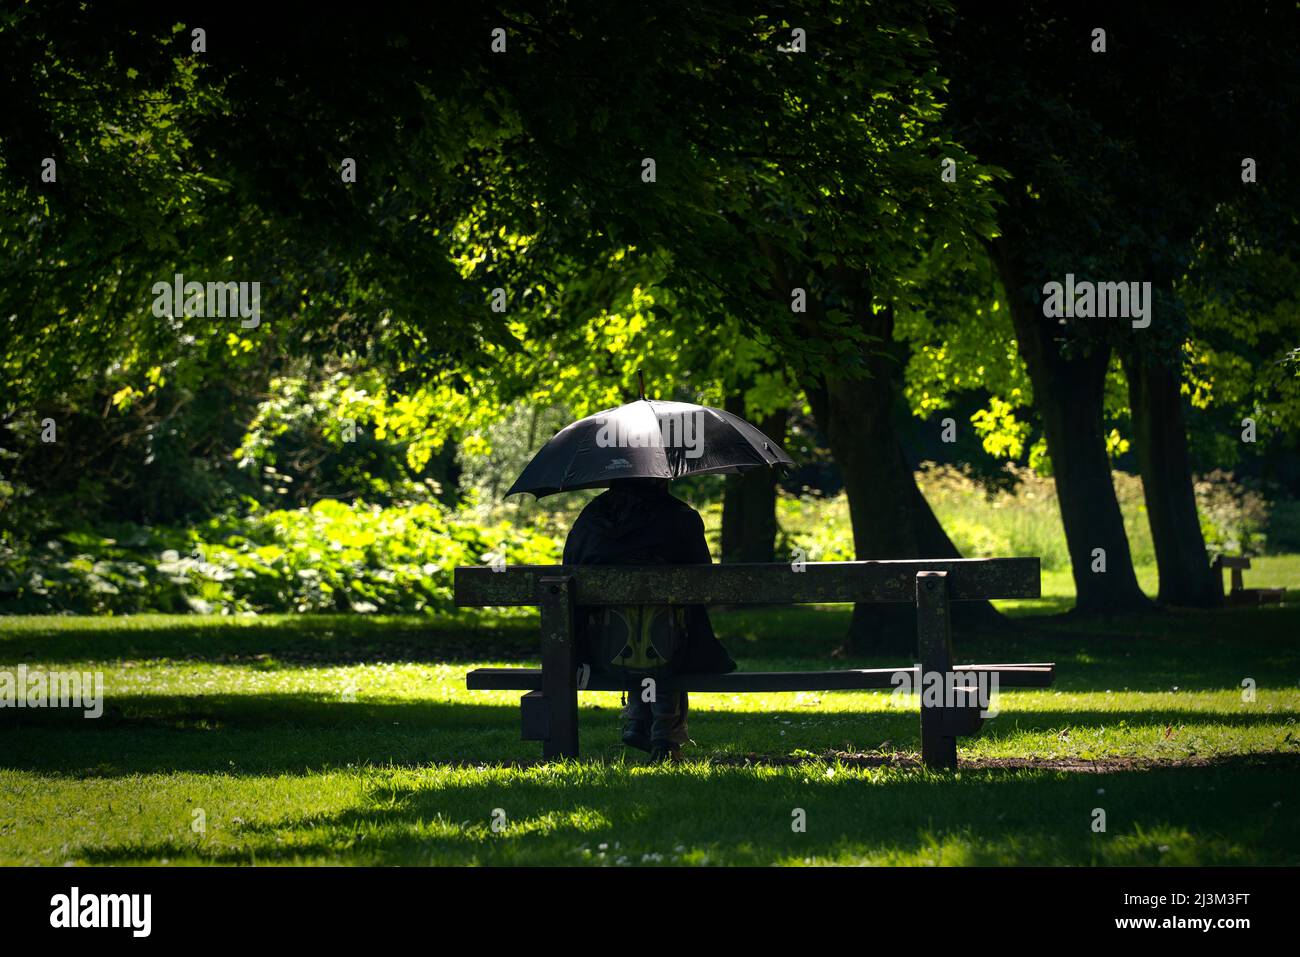 Personne vêque de vêtements noirs sous un parapluie noir dans un parc par temps ensoleillé, cachant son identité; Hawthorn, Durham, Angleterre Banque D'Images